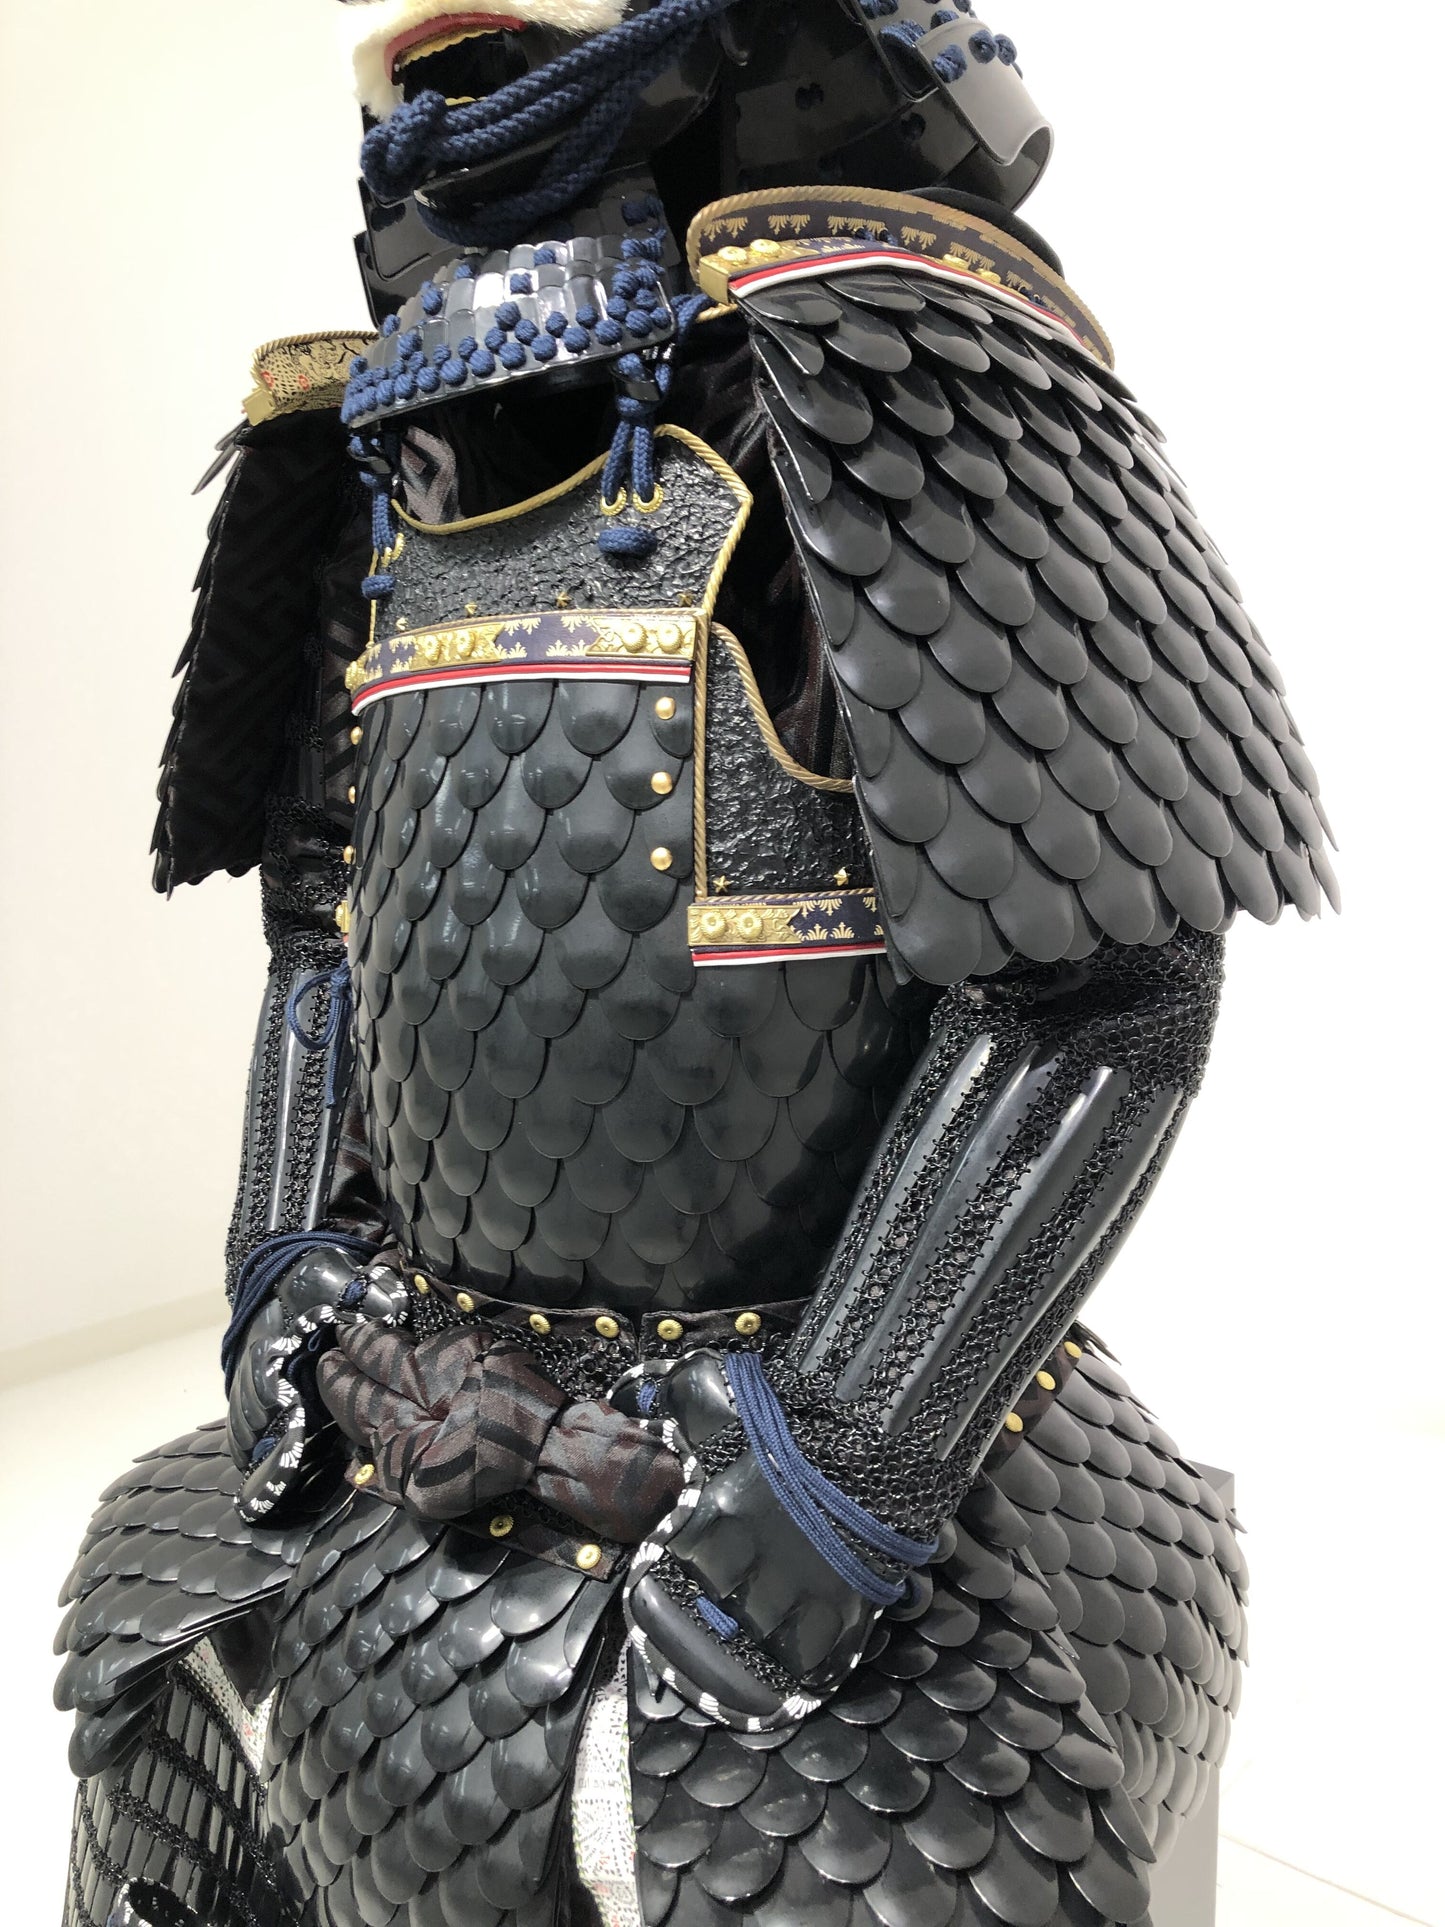 【O-012】Uroko(Scale) Armor